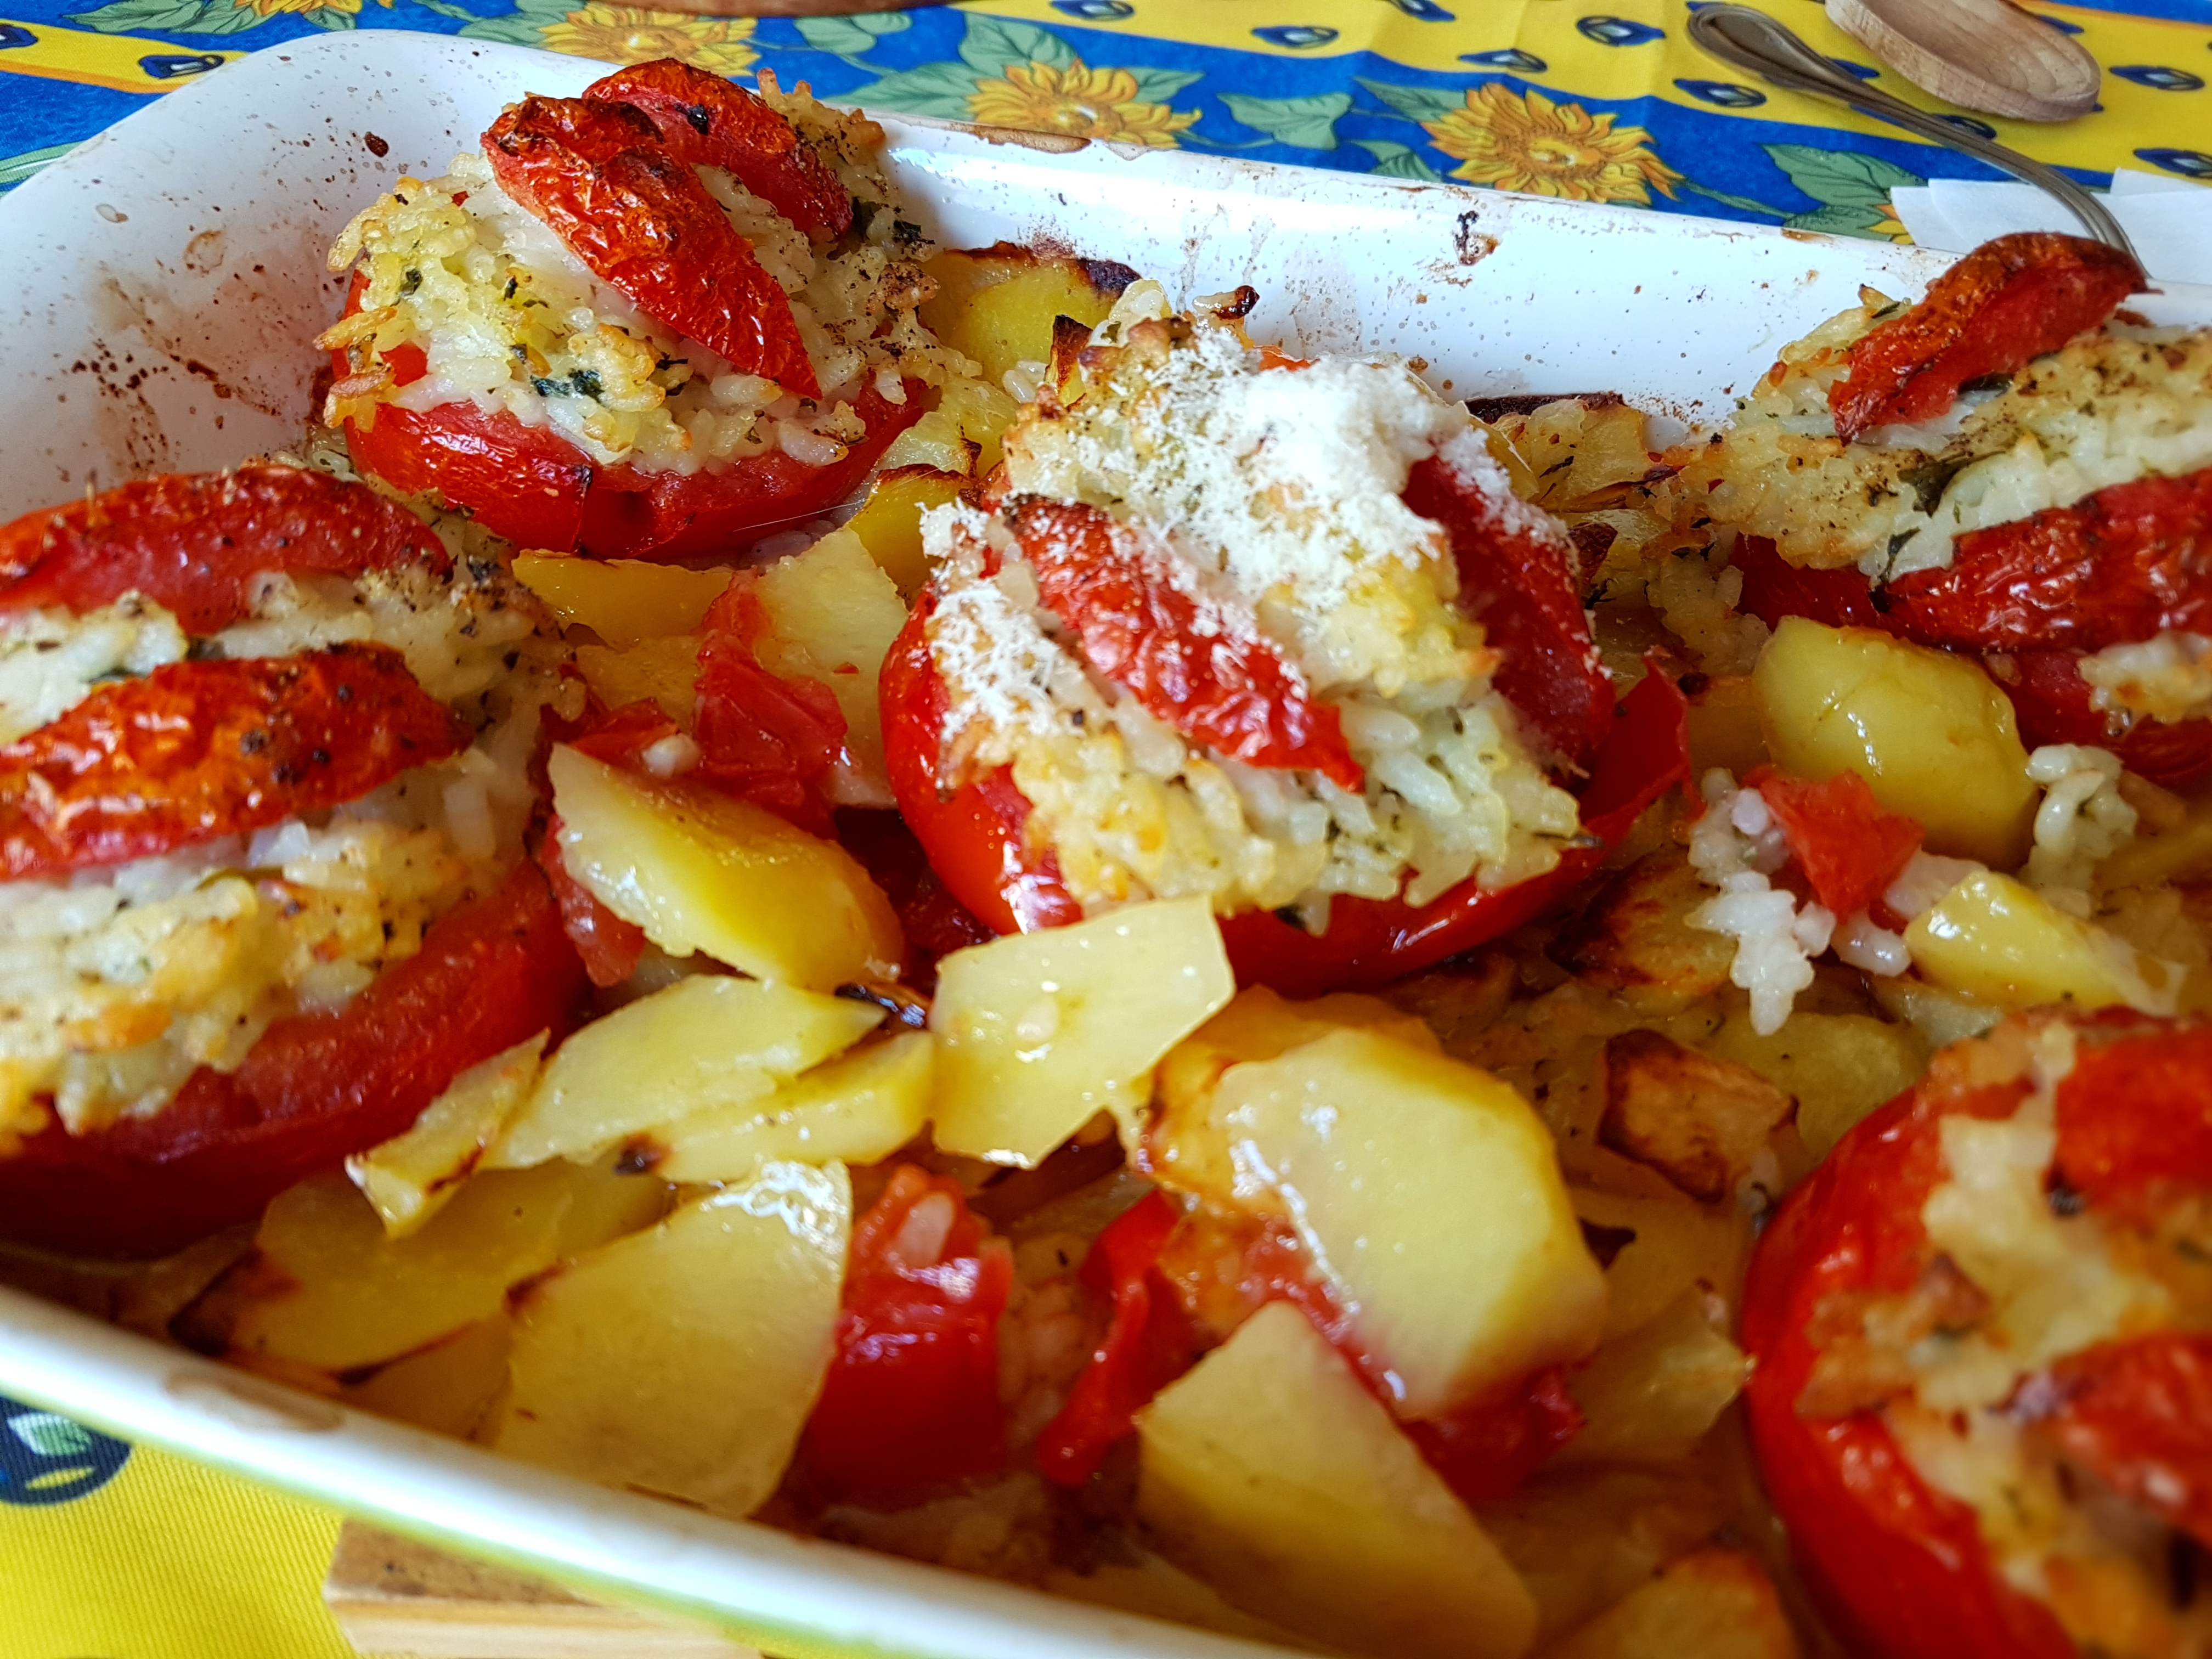 rice-stuffed tomatoes with potatoes made by zia Emilia | pomodori ripieni di riso con le patate, fatti da zia Emilia